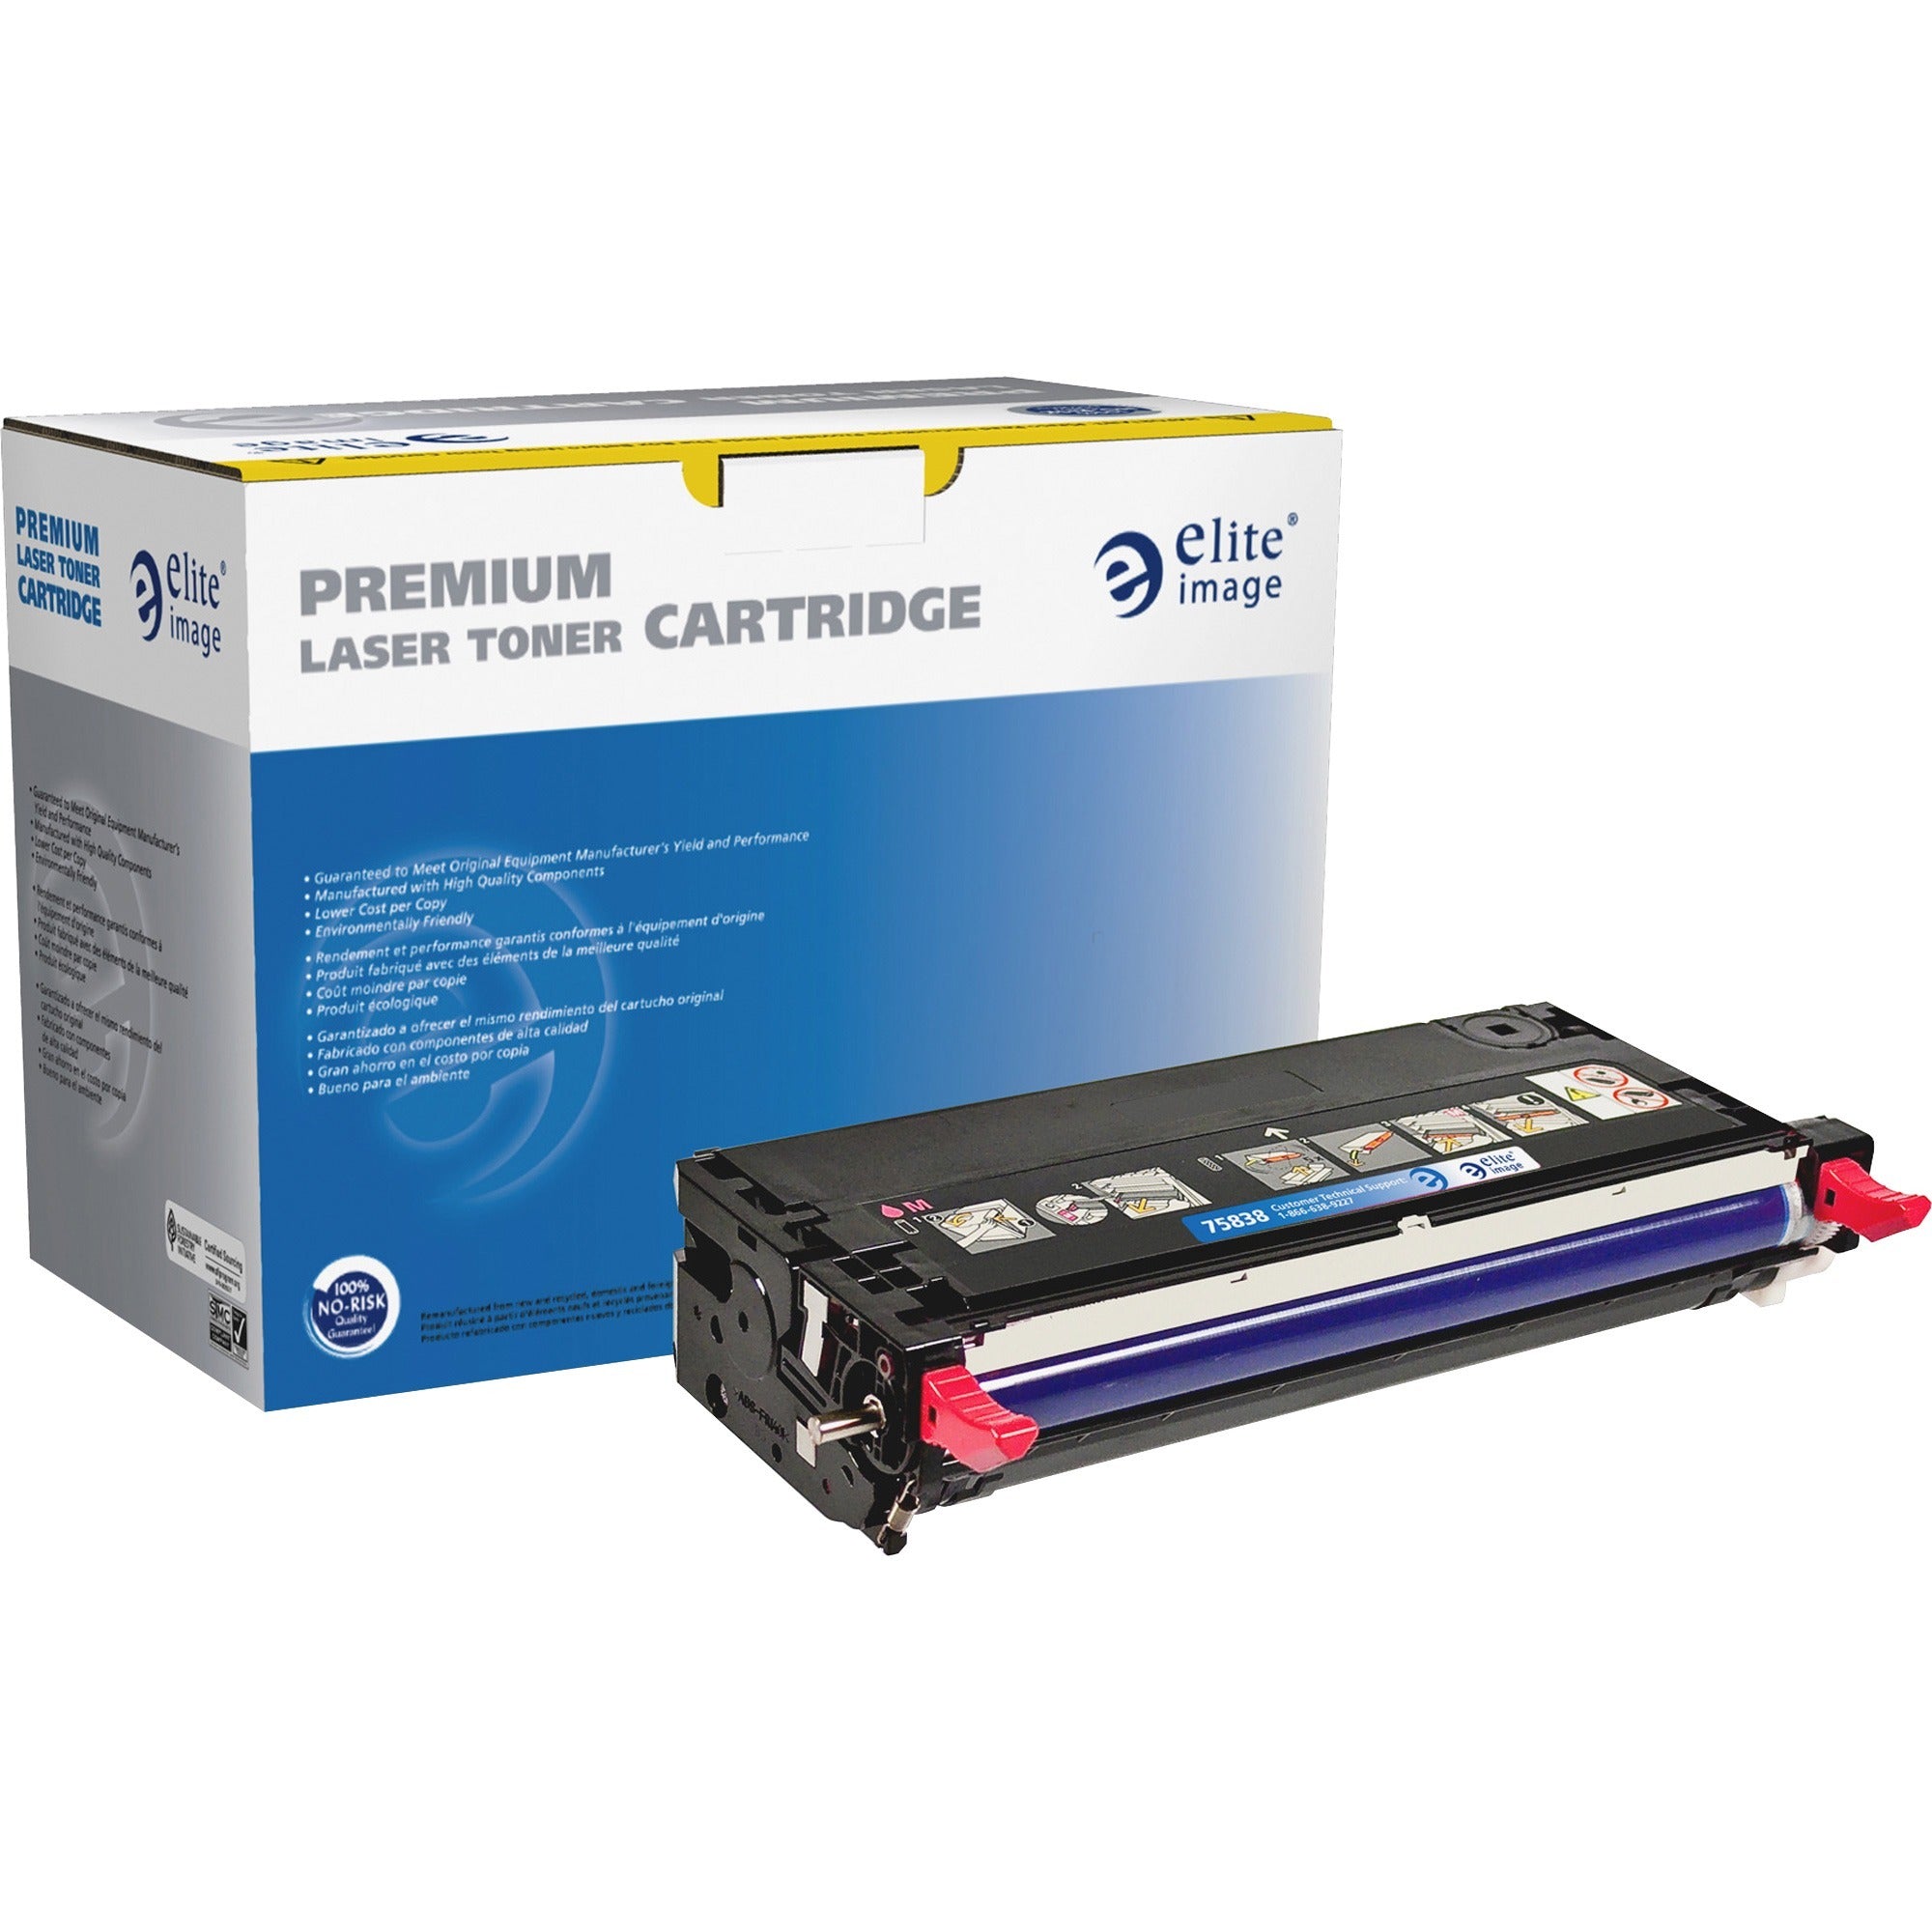 Elite Image Remanufactured Toner Cartridge - Alternative for Dell (330-1200) - Laser - 9000 Pages - Magenta - 1 Each - 1